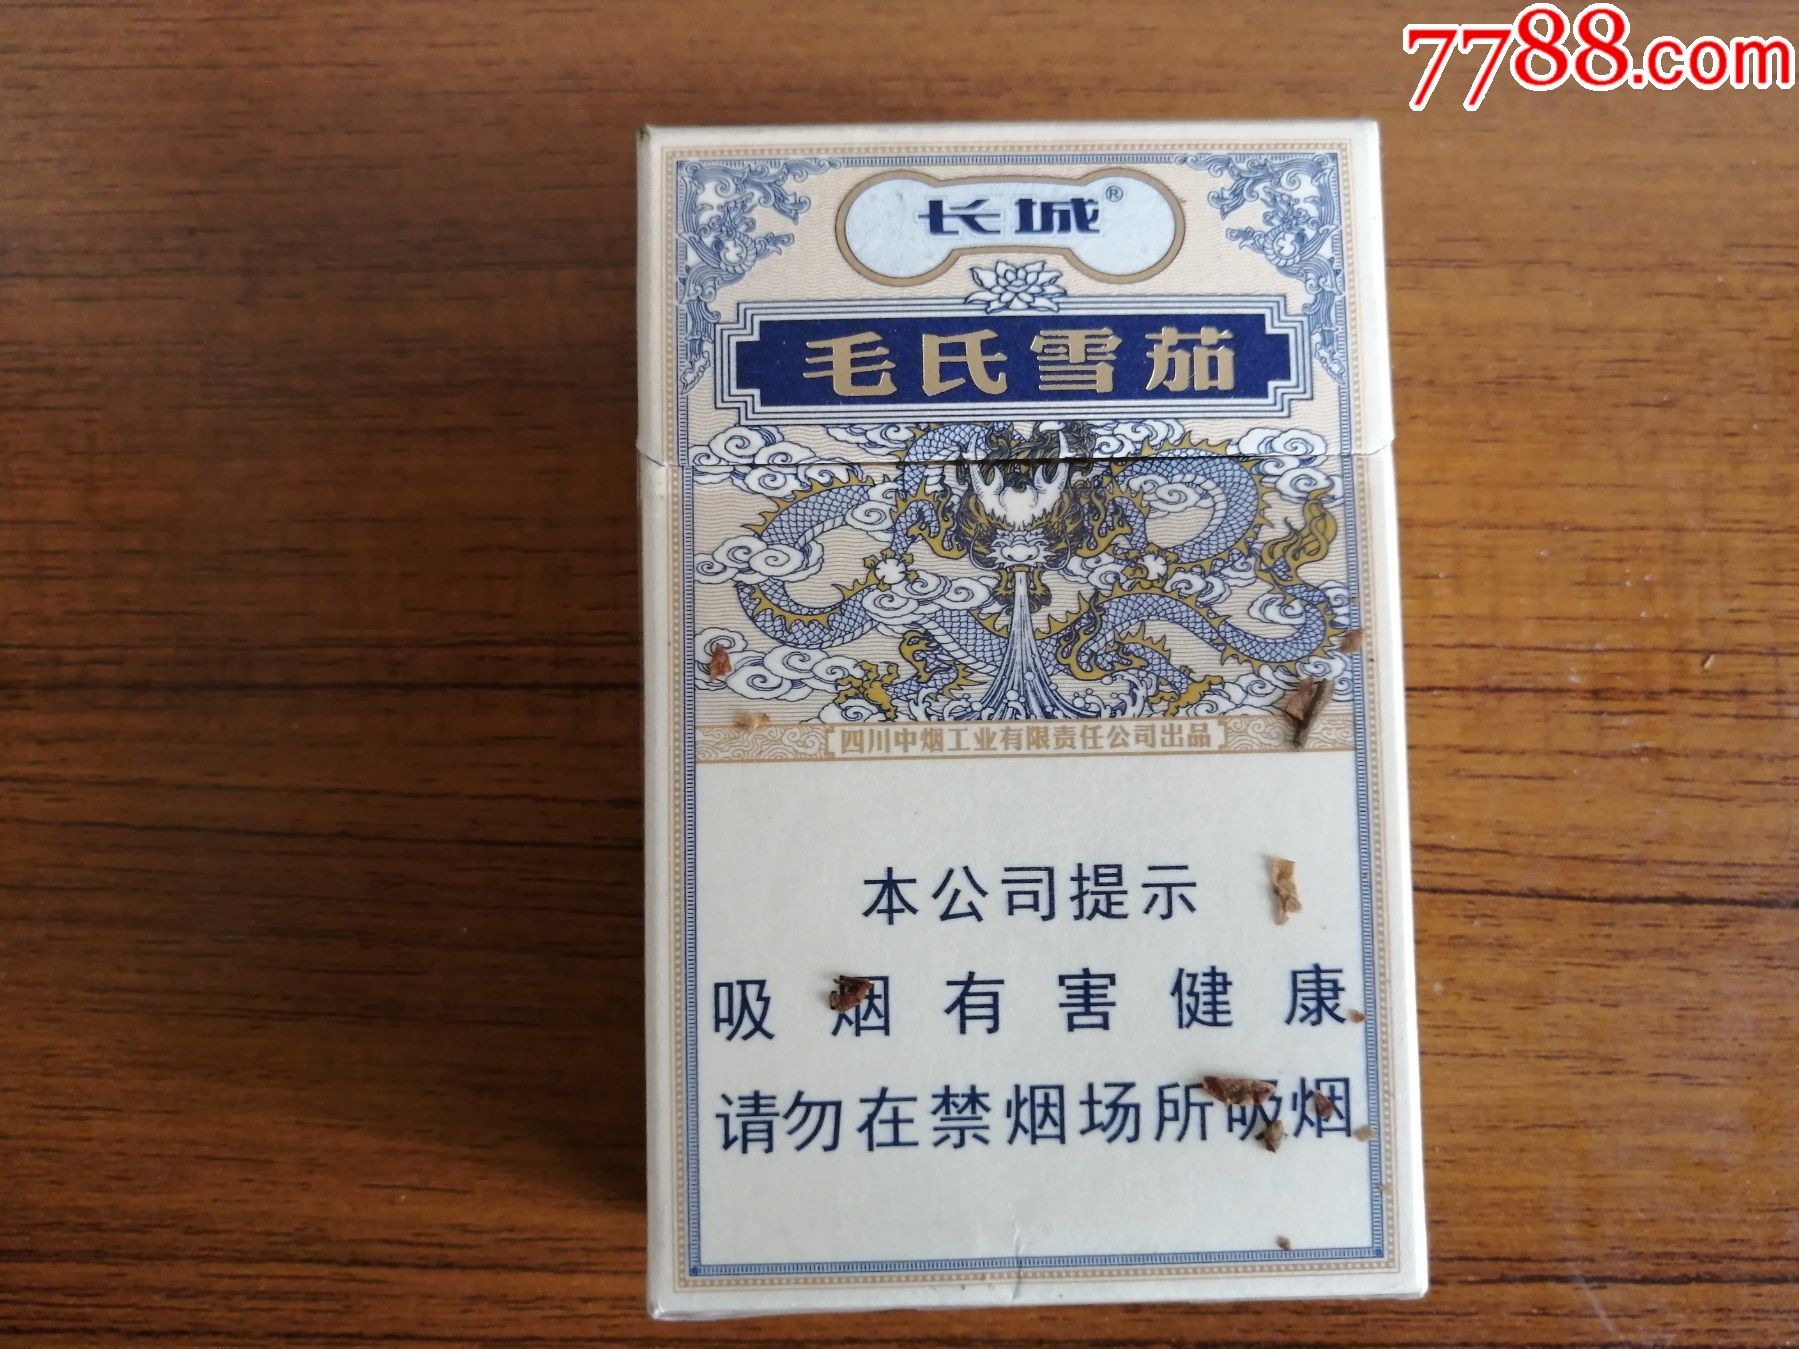 长城毛氏雪茄2号-烟标/烟盒-7788收藏